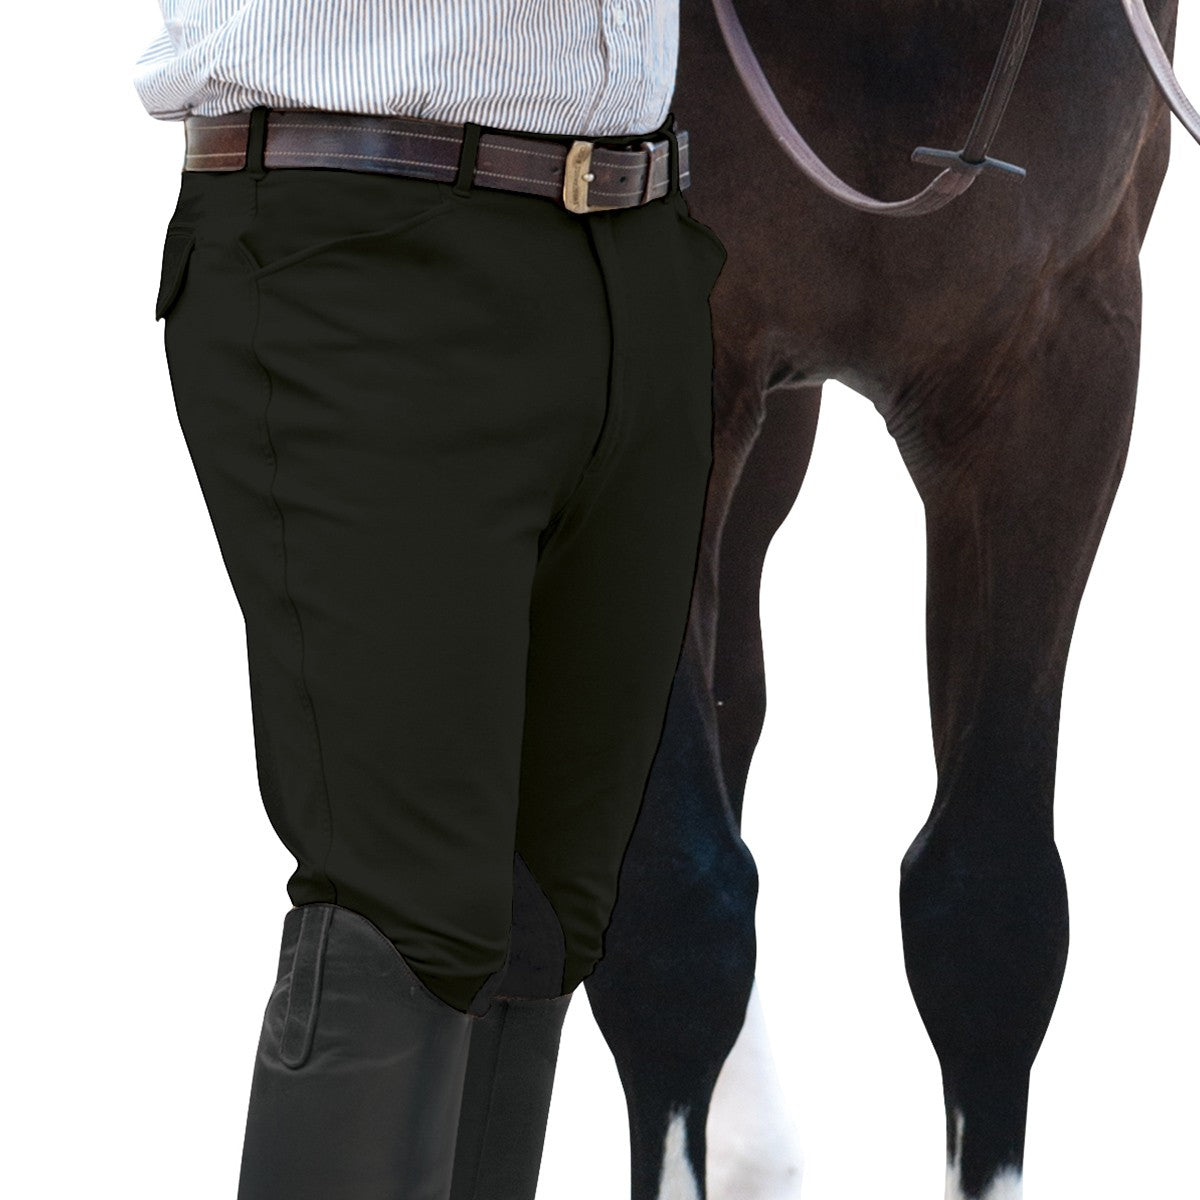 Ovation EuroWeave™ Front Zip 4-Pocket Knee Patch Breeches - Men's - Equine Exchange Tack Shop